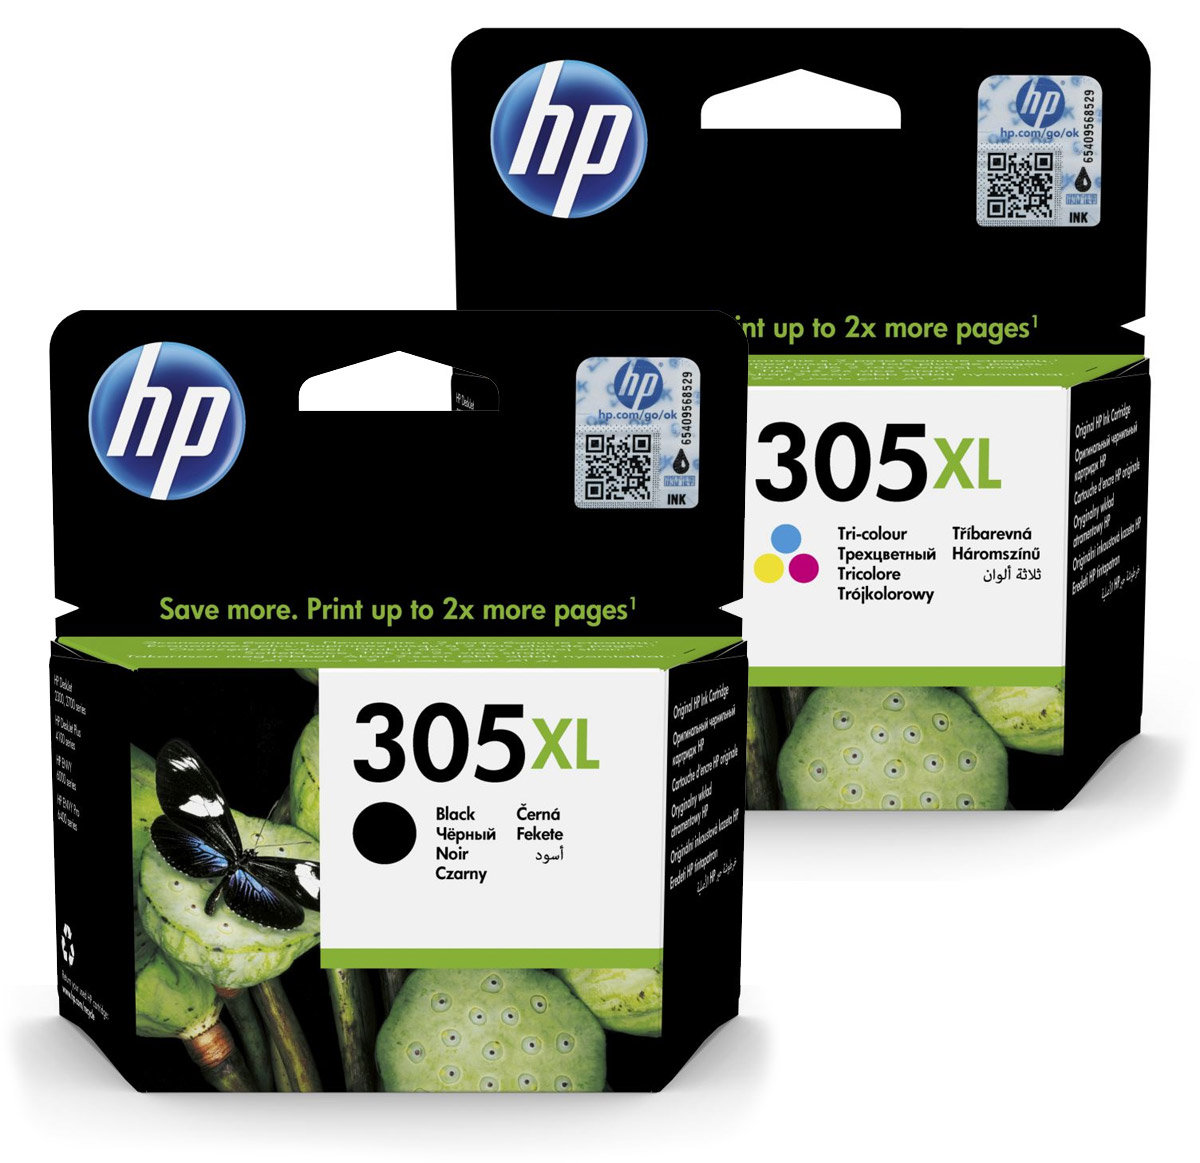 Sada inkoustových kazet HP 305XL pro snadné objednání (HP-305XL)